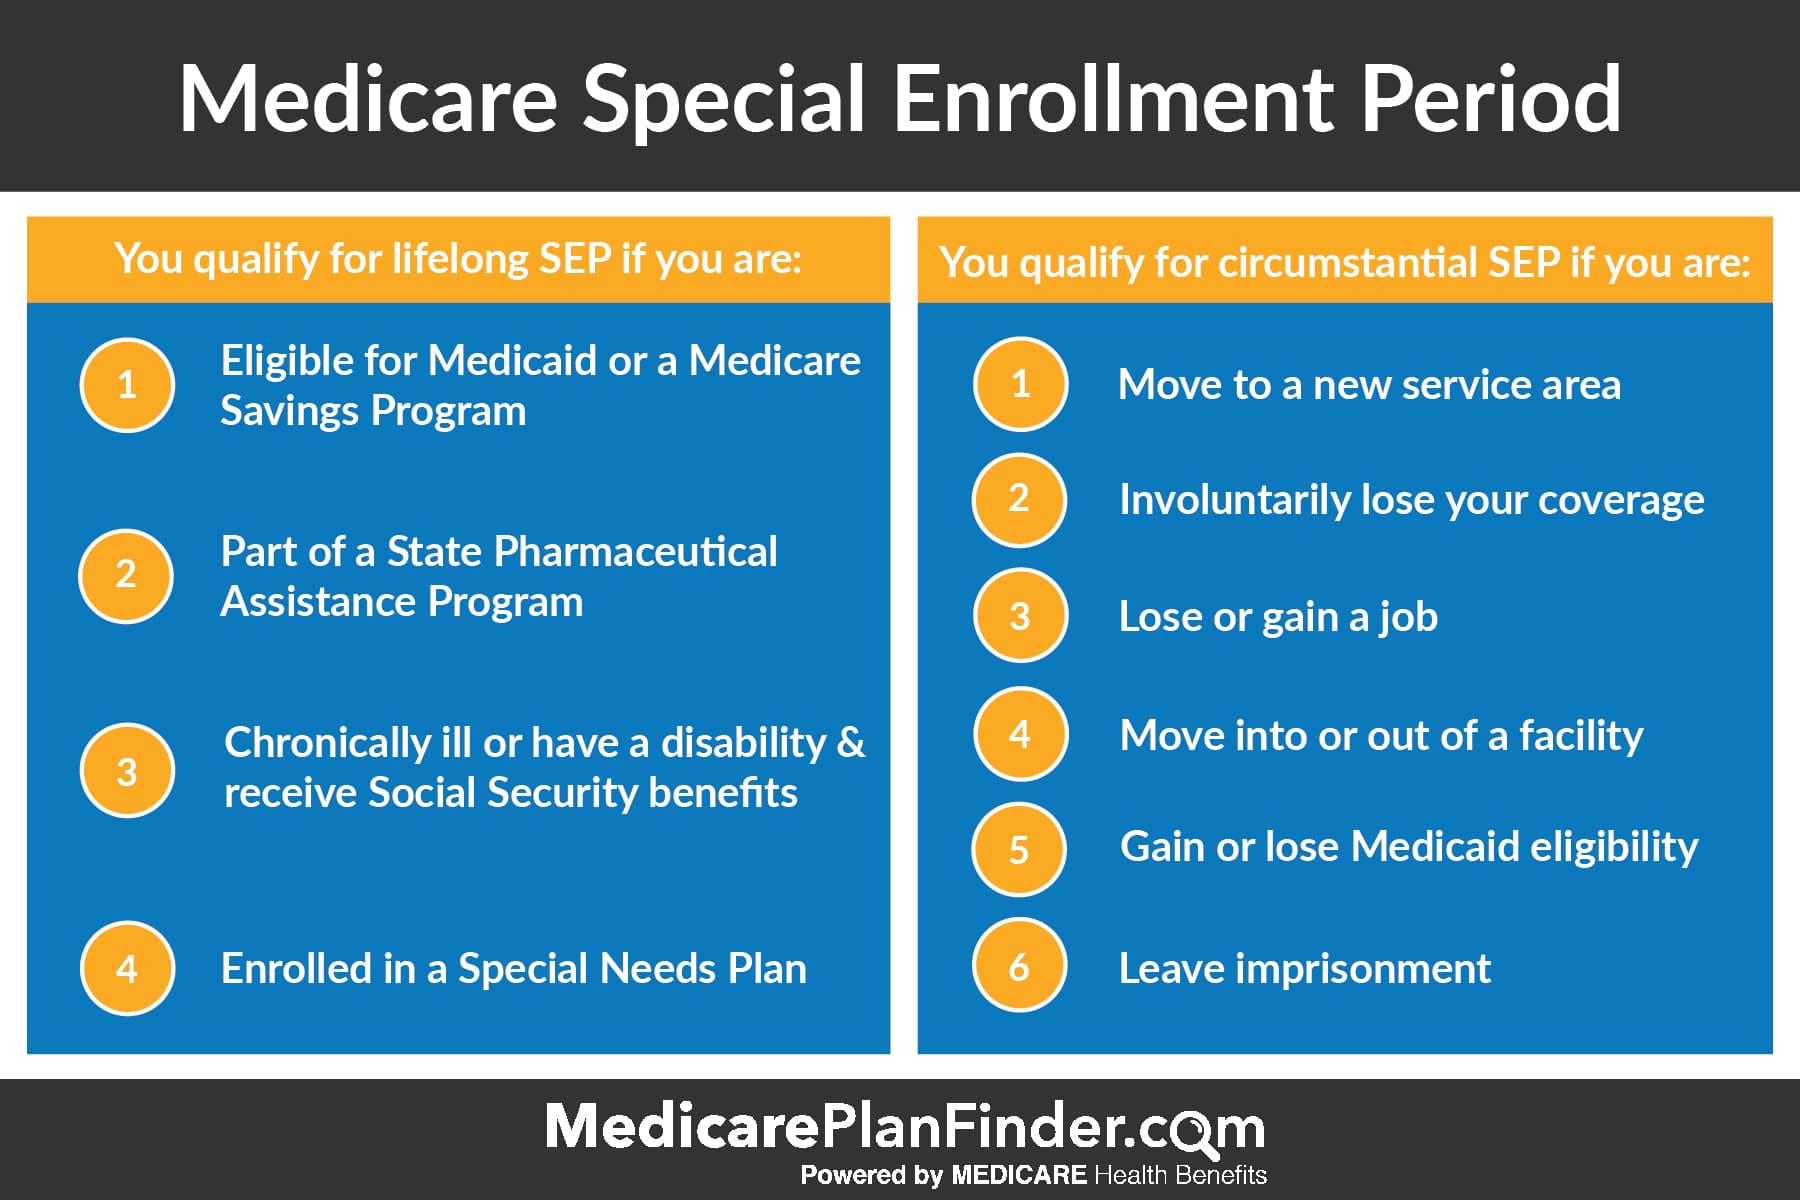 Medicare Special Enrollment Period 2020